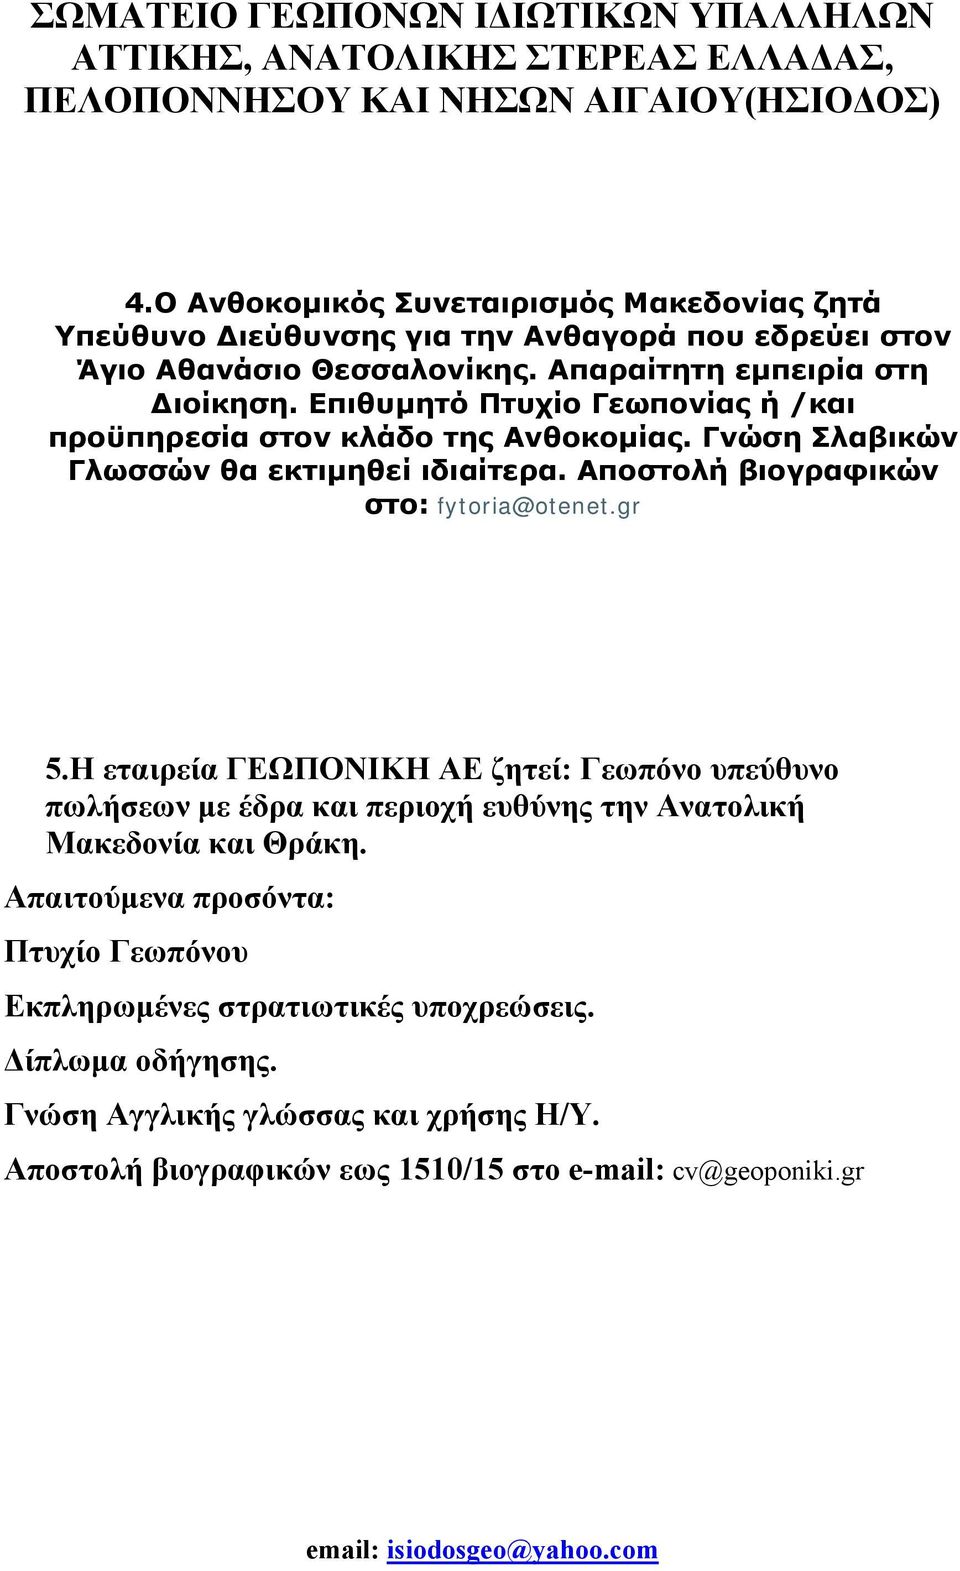 Η εταιρεία ΓΕΩΠΟΝΙΚΗ ΑΕ ζητεί: Γεωπόνο υπεύθυνο πωλήσεων με έδρα και περιοχή ευθύνης την Ανατολική Μακεδονία και Θράκη.